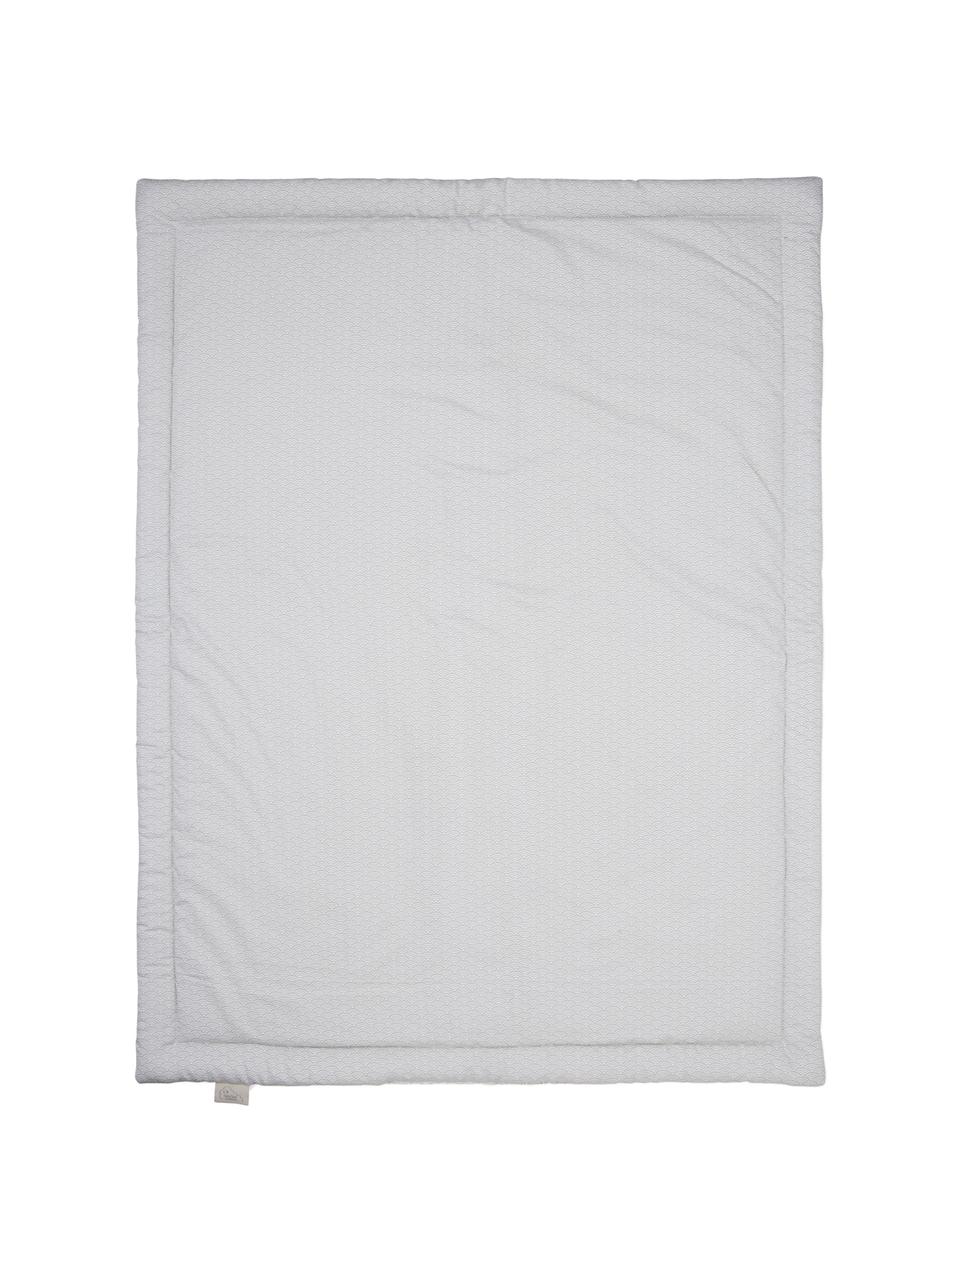 Decke Wave aus Bio-Baumwolle, Bezug: 100% Biobaumwolle, Öko-Te, Grau, Weiß, 90 x 120 cm